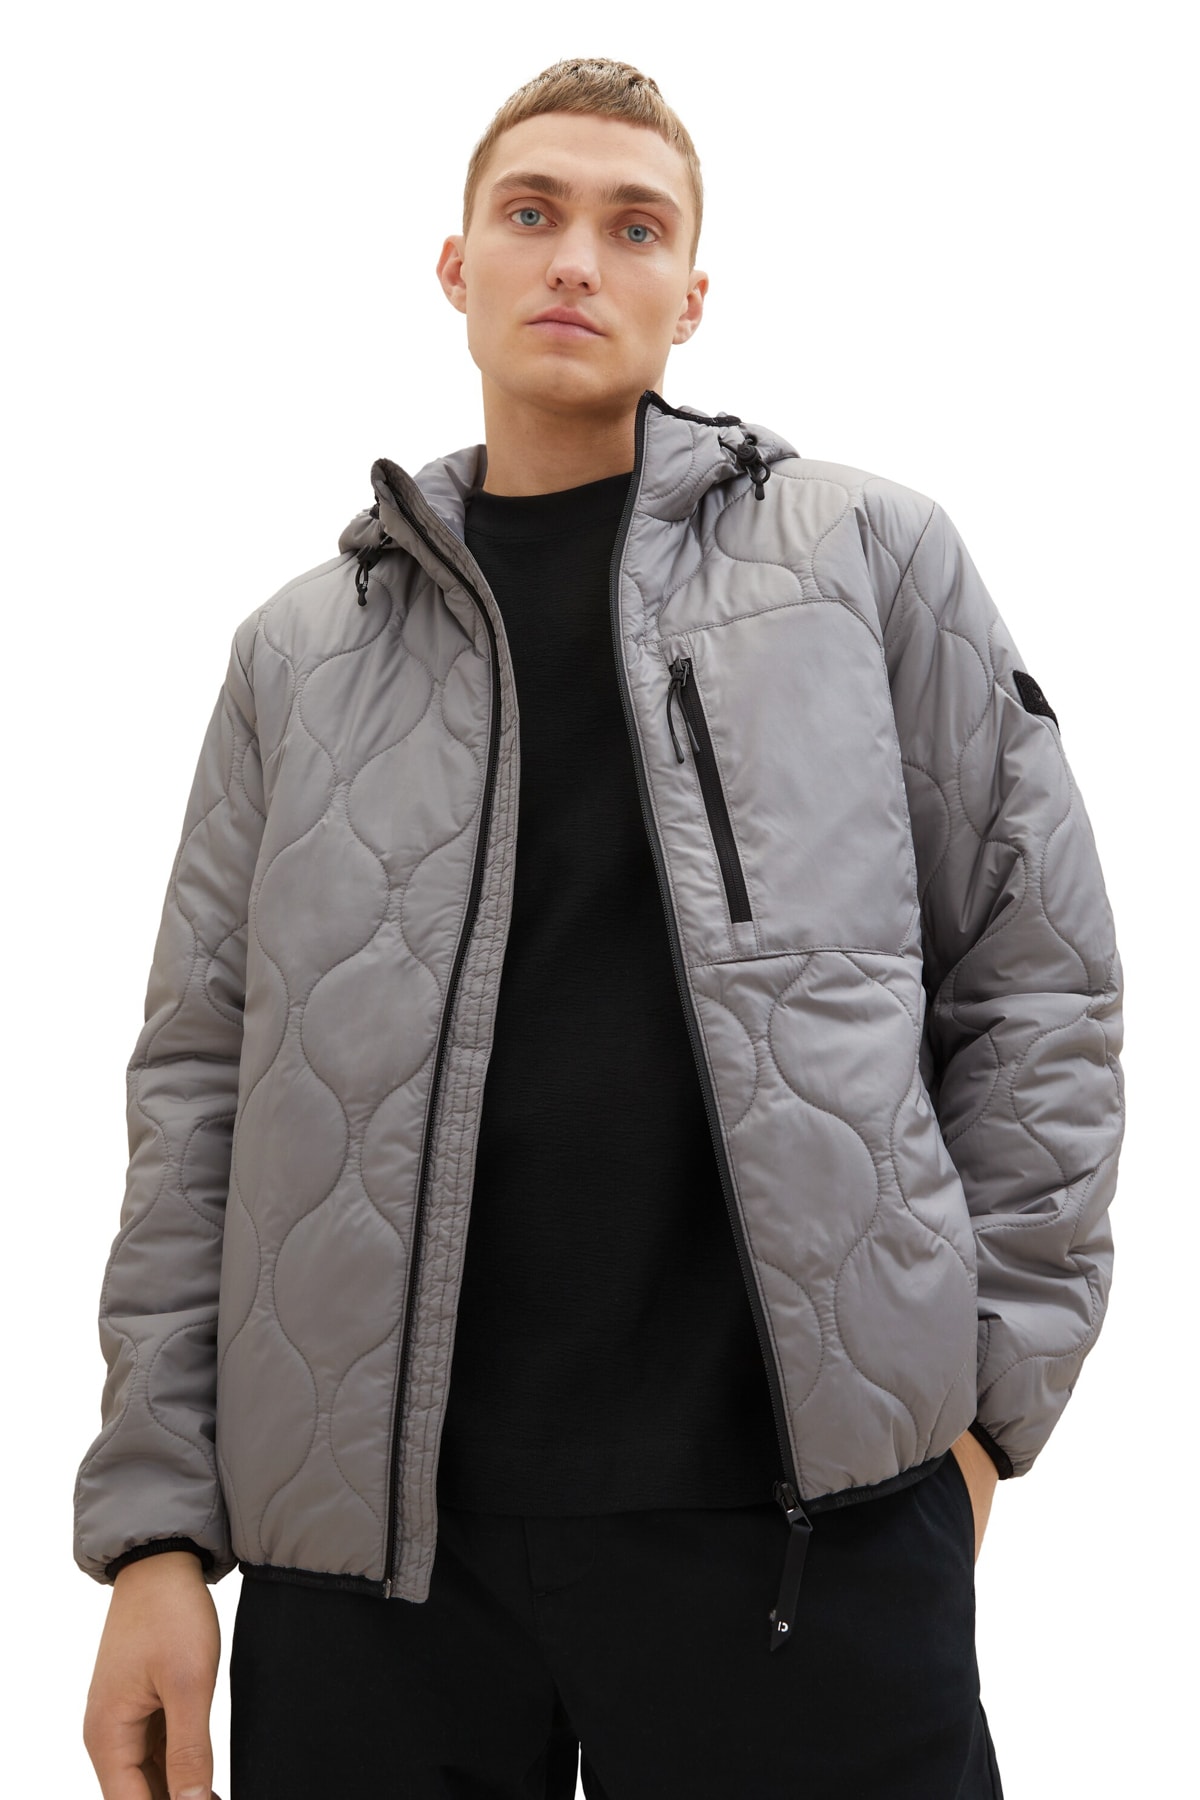 Зимняя куртка - Серая - Пуховик Tom Tailor Denim, серый толстовка tom tailor размер xs серый